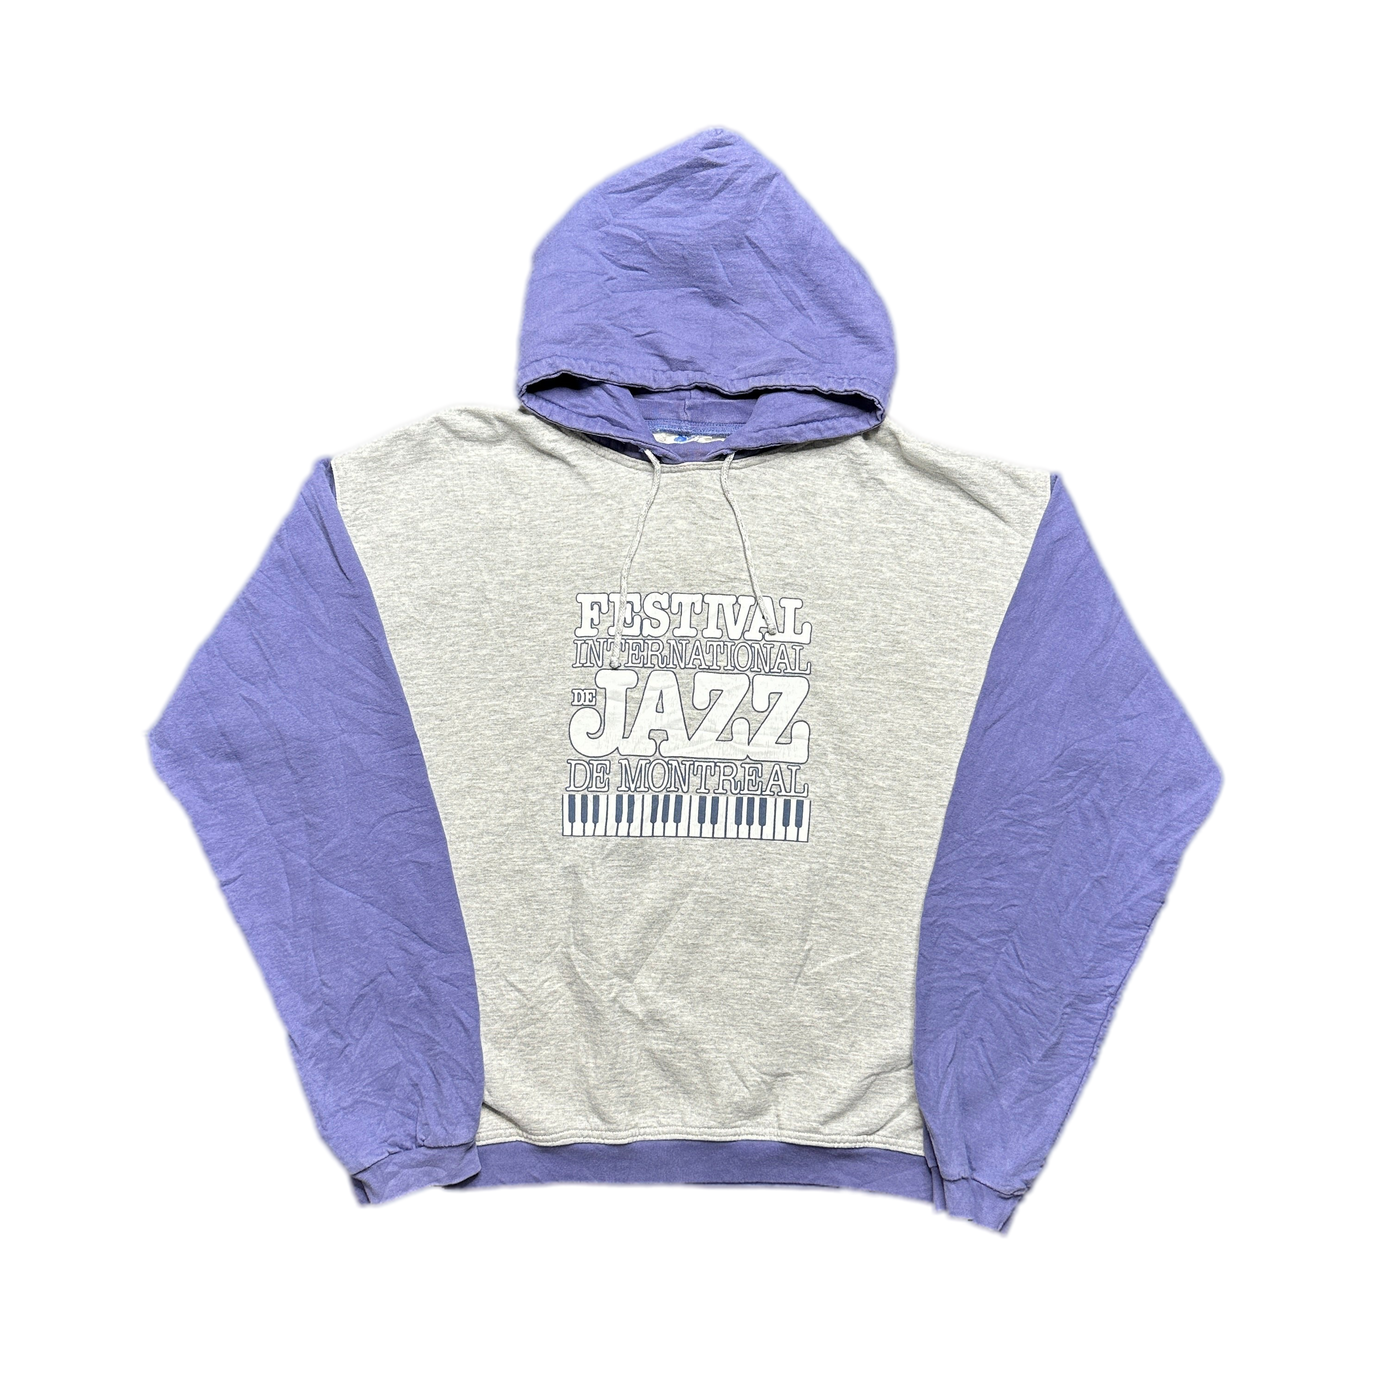 90s Festival International de Jazz de Montreal Hoodie Sweatshirt sz XL